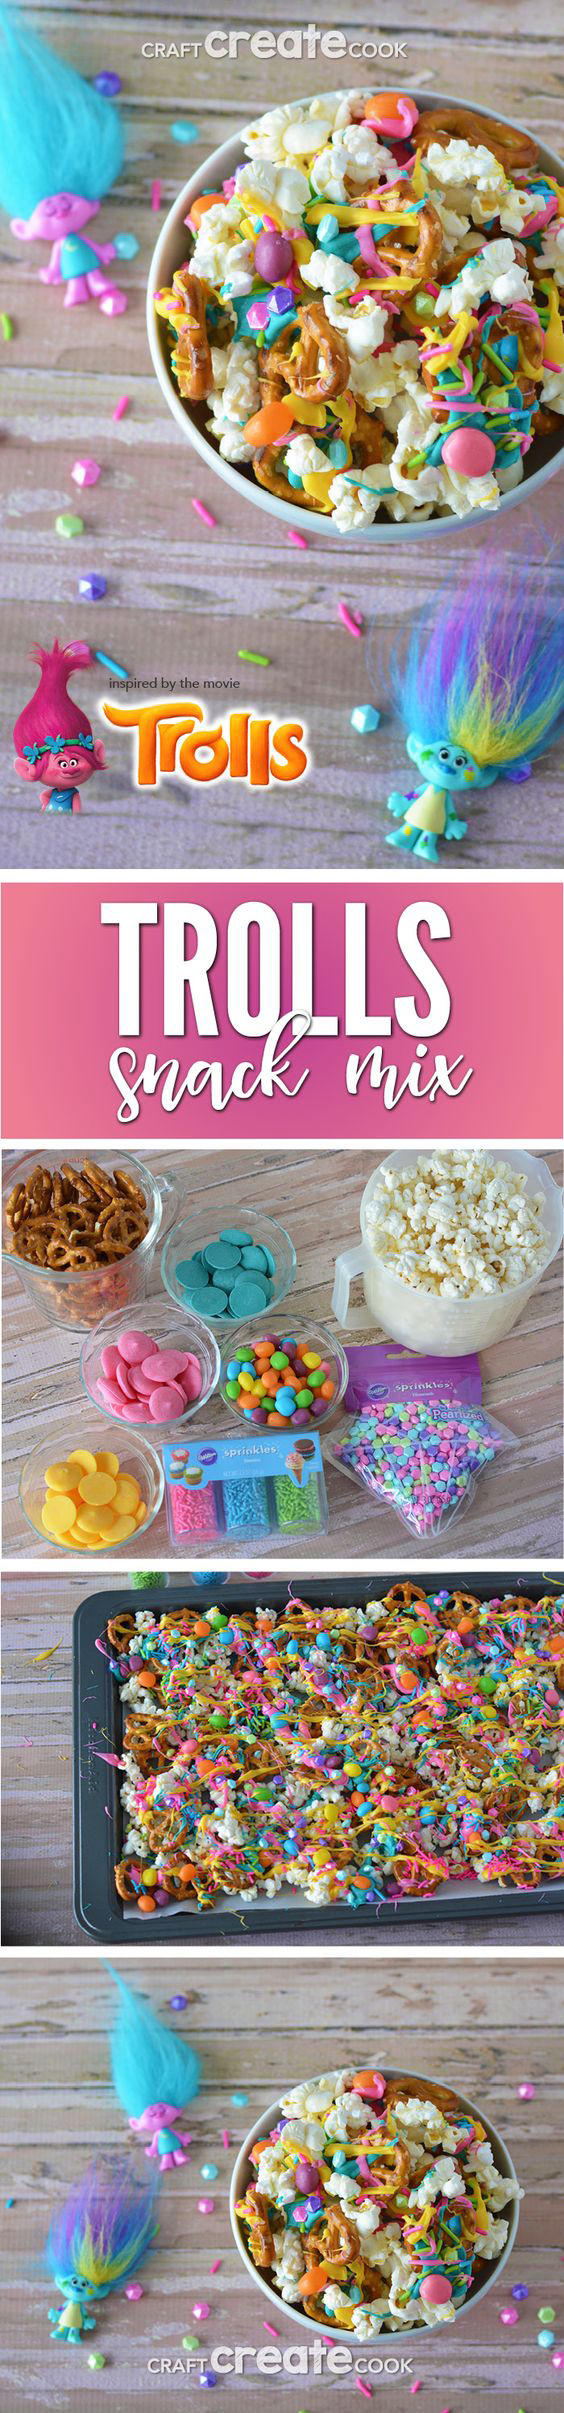 trolls snack mix